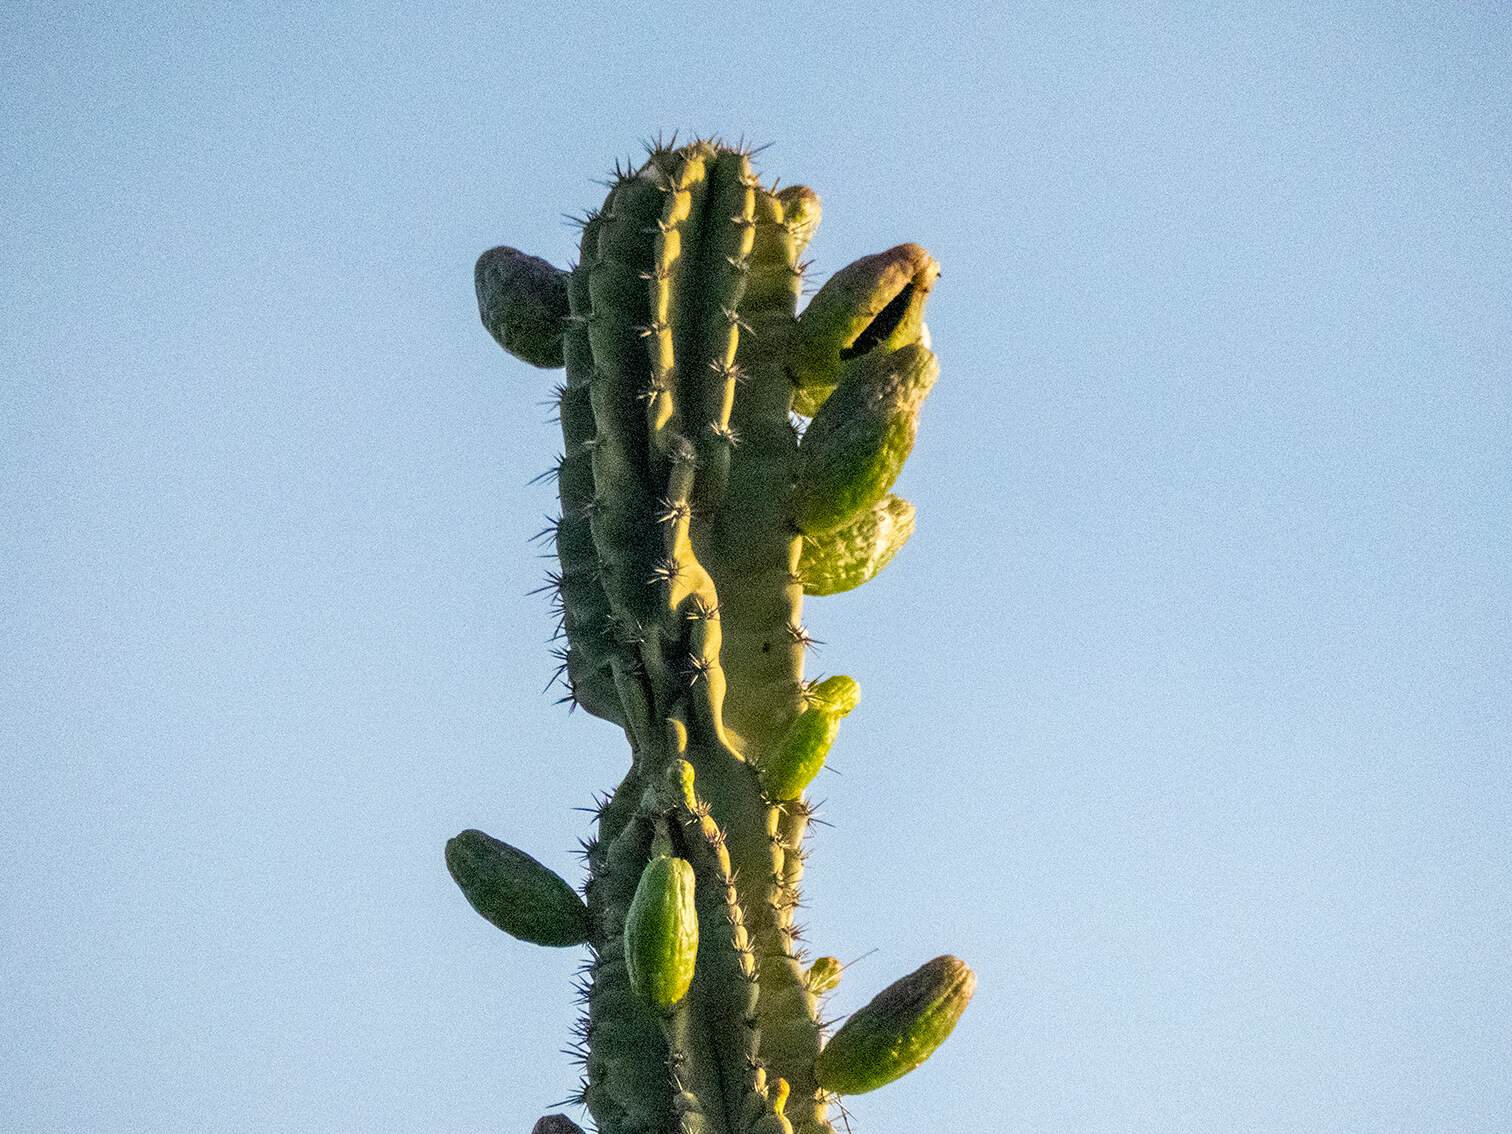 A un cactus le nacen frutos en medio del desierto. El sol lo calienta por el costado derecho. Nace la vida en el desierto.